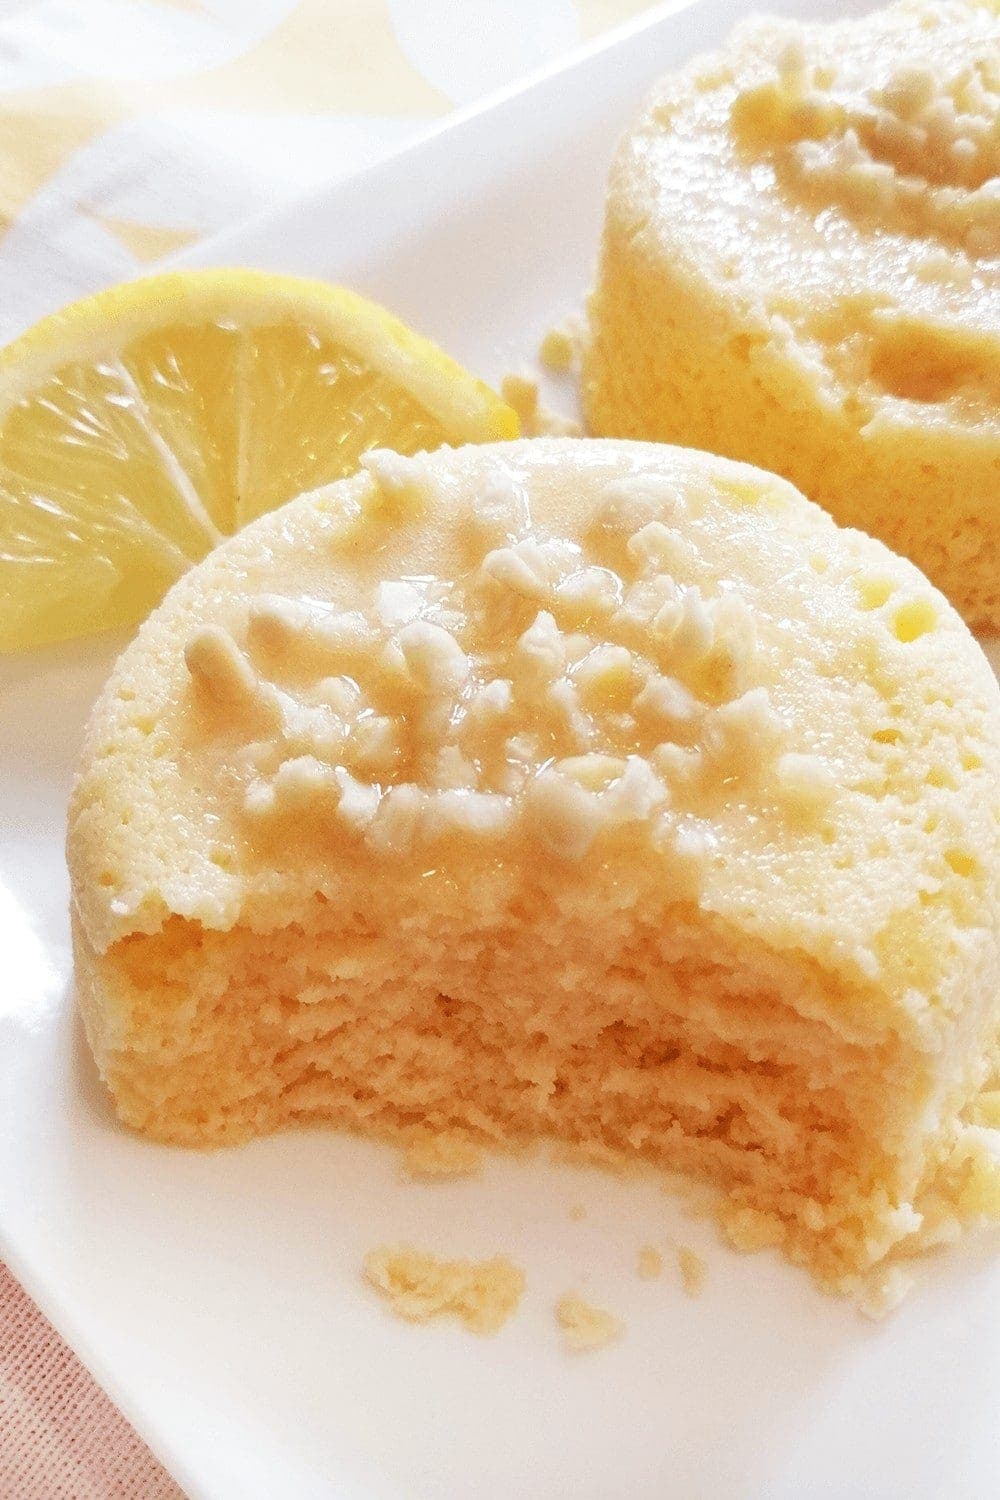 90 seconds keto lemon mug cake recipe